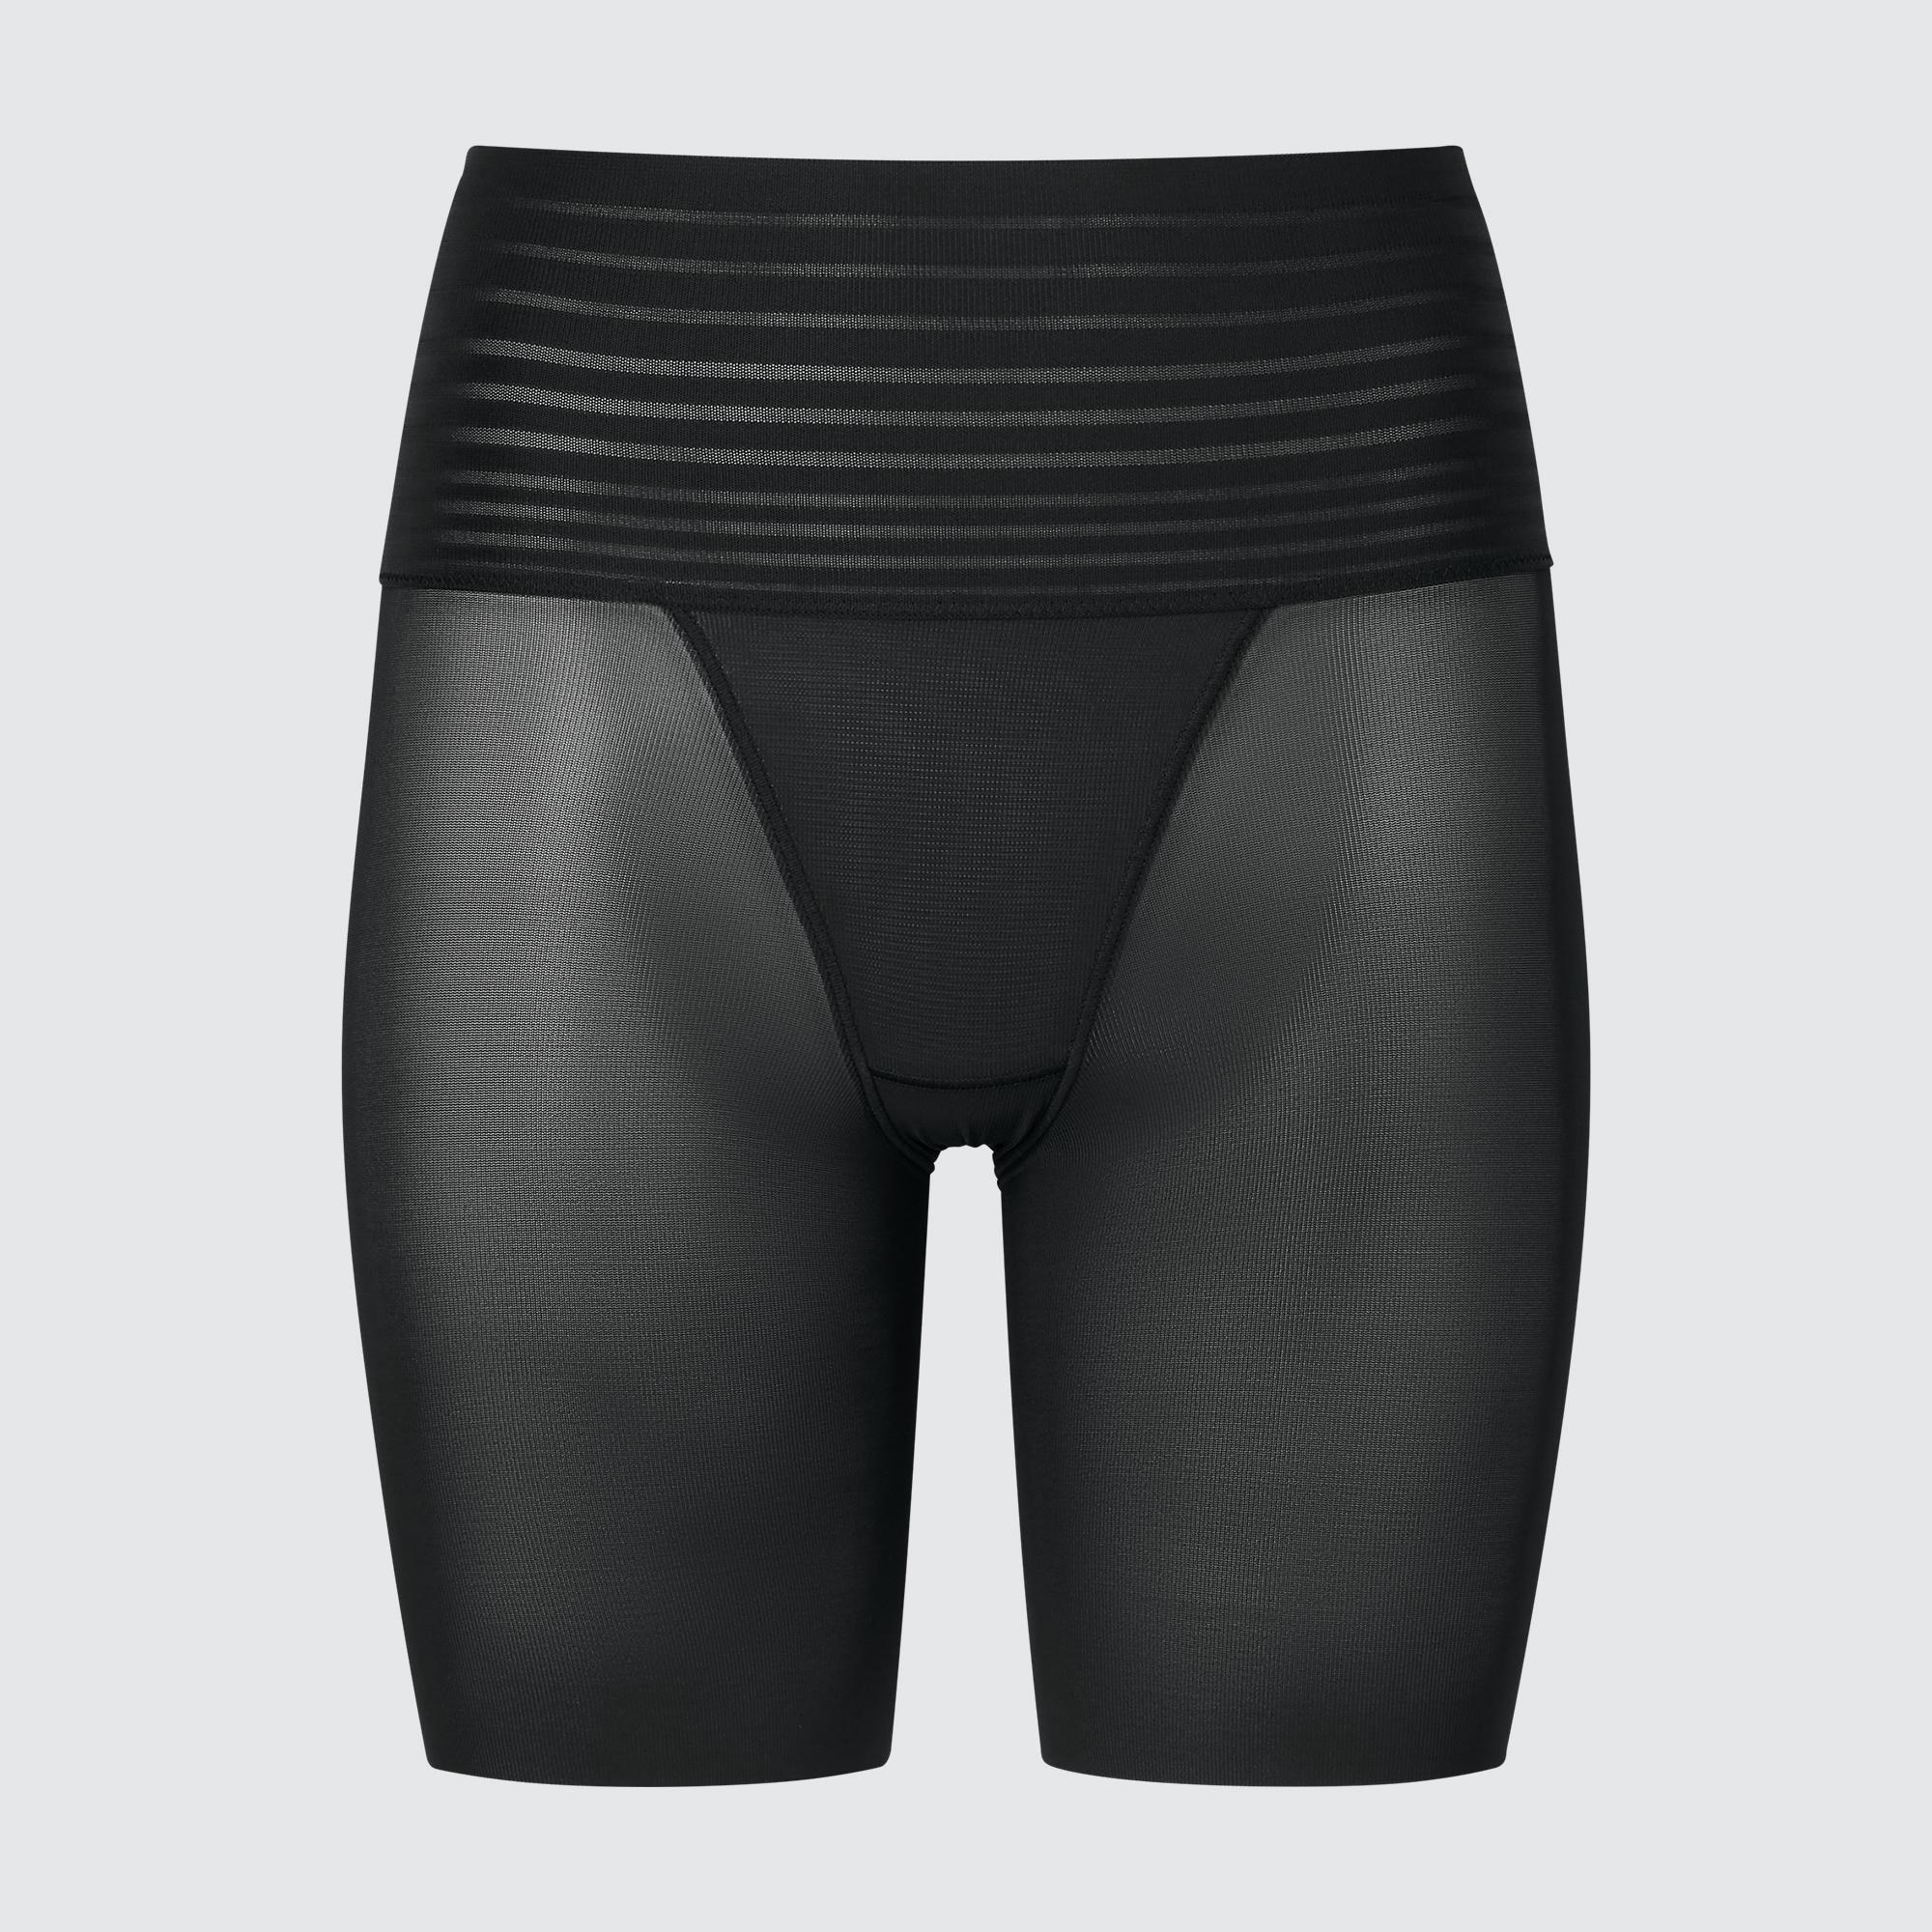 UNIQLO Masterpiece, WOMEN AIRism Body Shaper Non-Lined Half Shorts